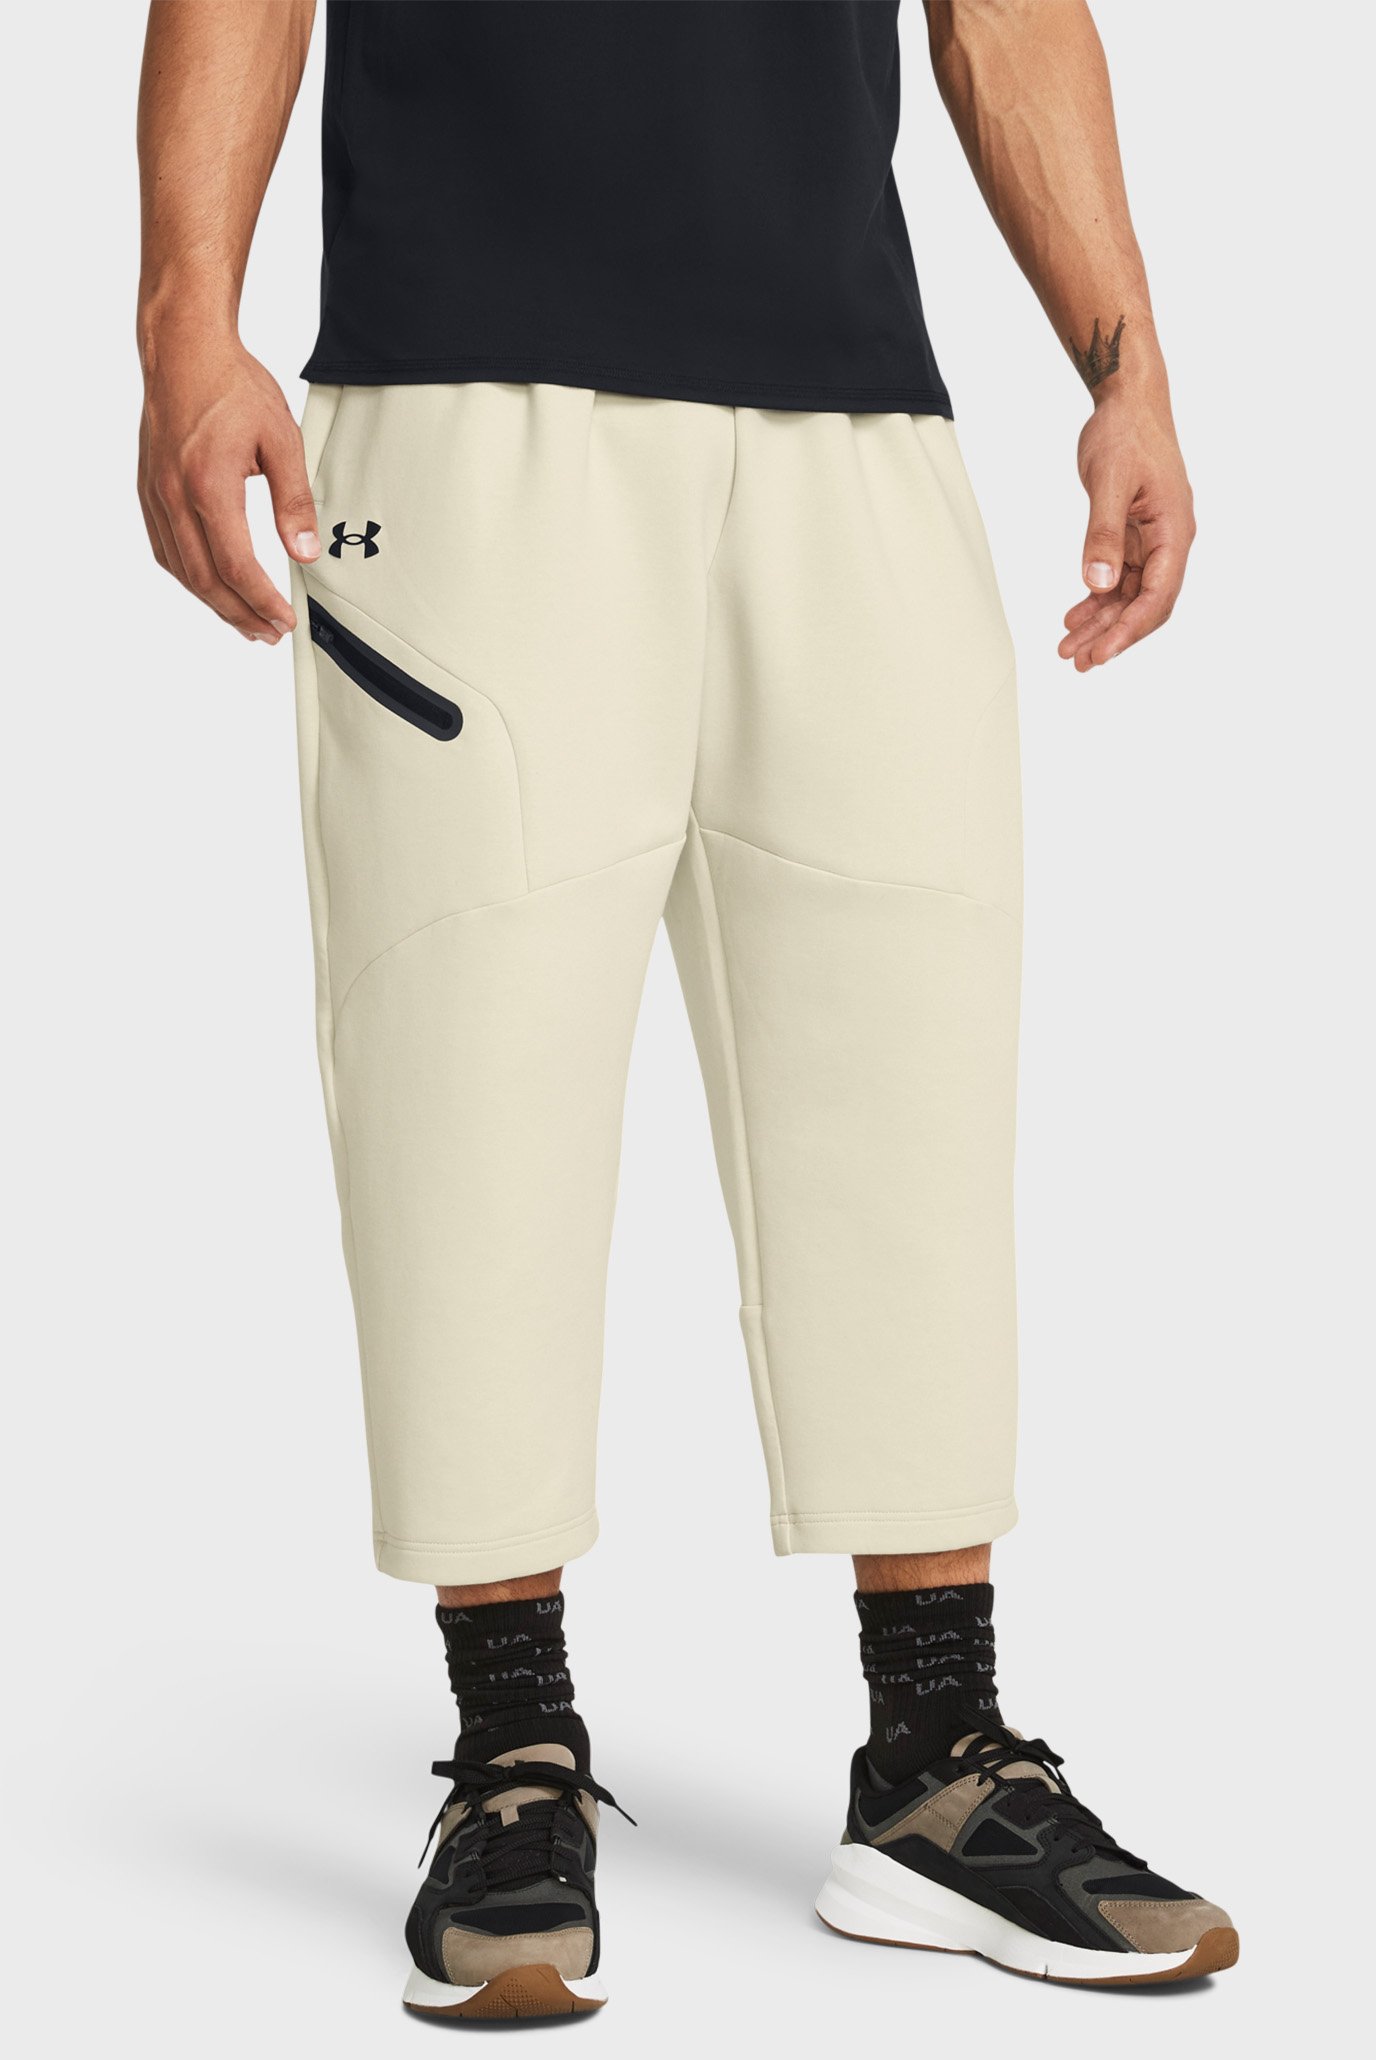 Чоловічі бежеві спортивні штани Unstoppable Flc Baggy Crop 1